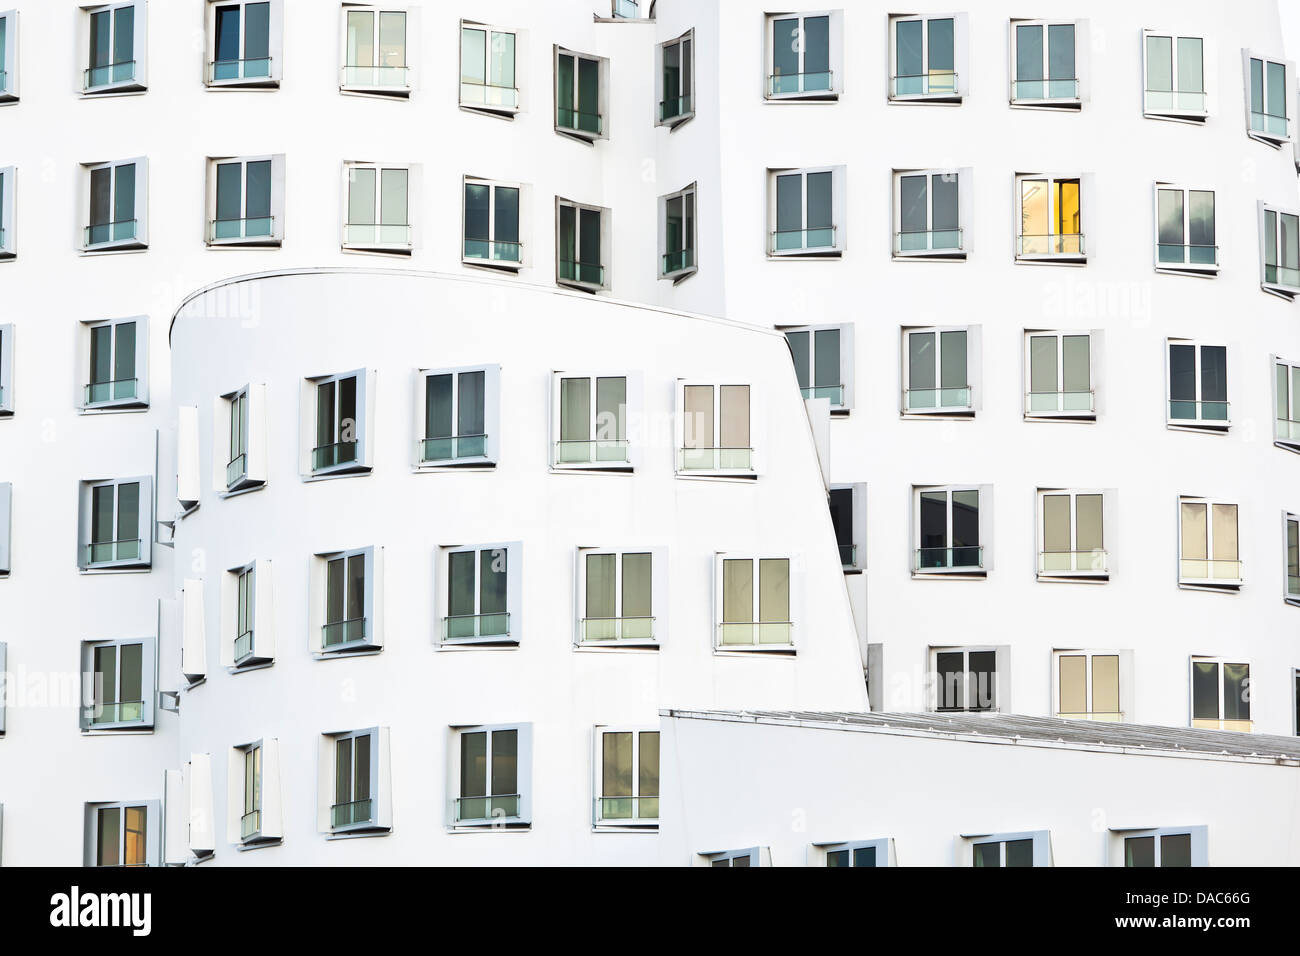 Neuer Zollhof por Frank Gehry en el Medienhafen de Düsseldorf. Foto de stock